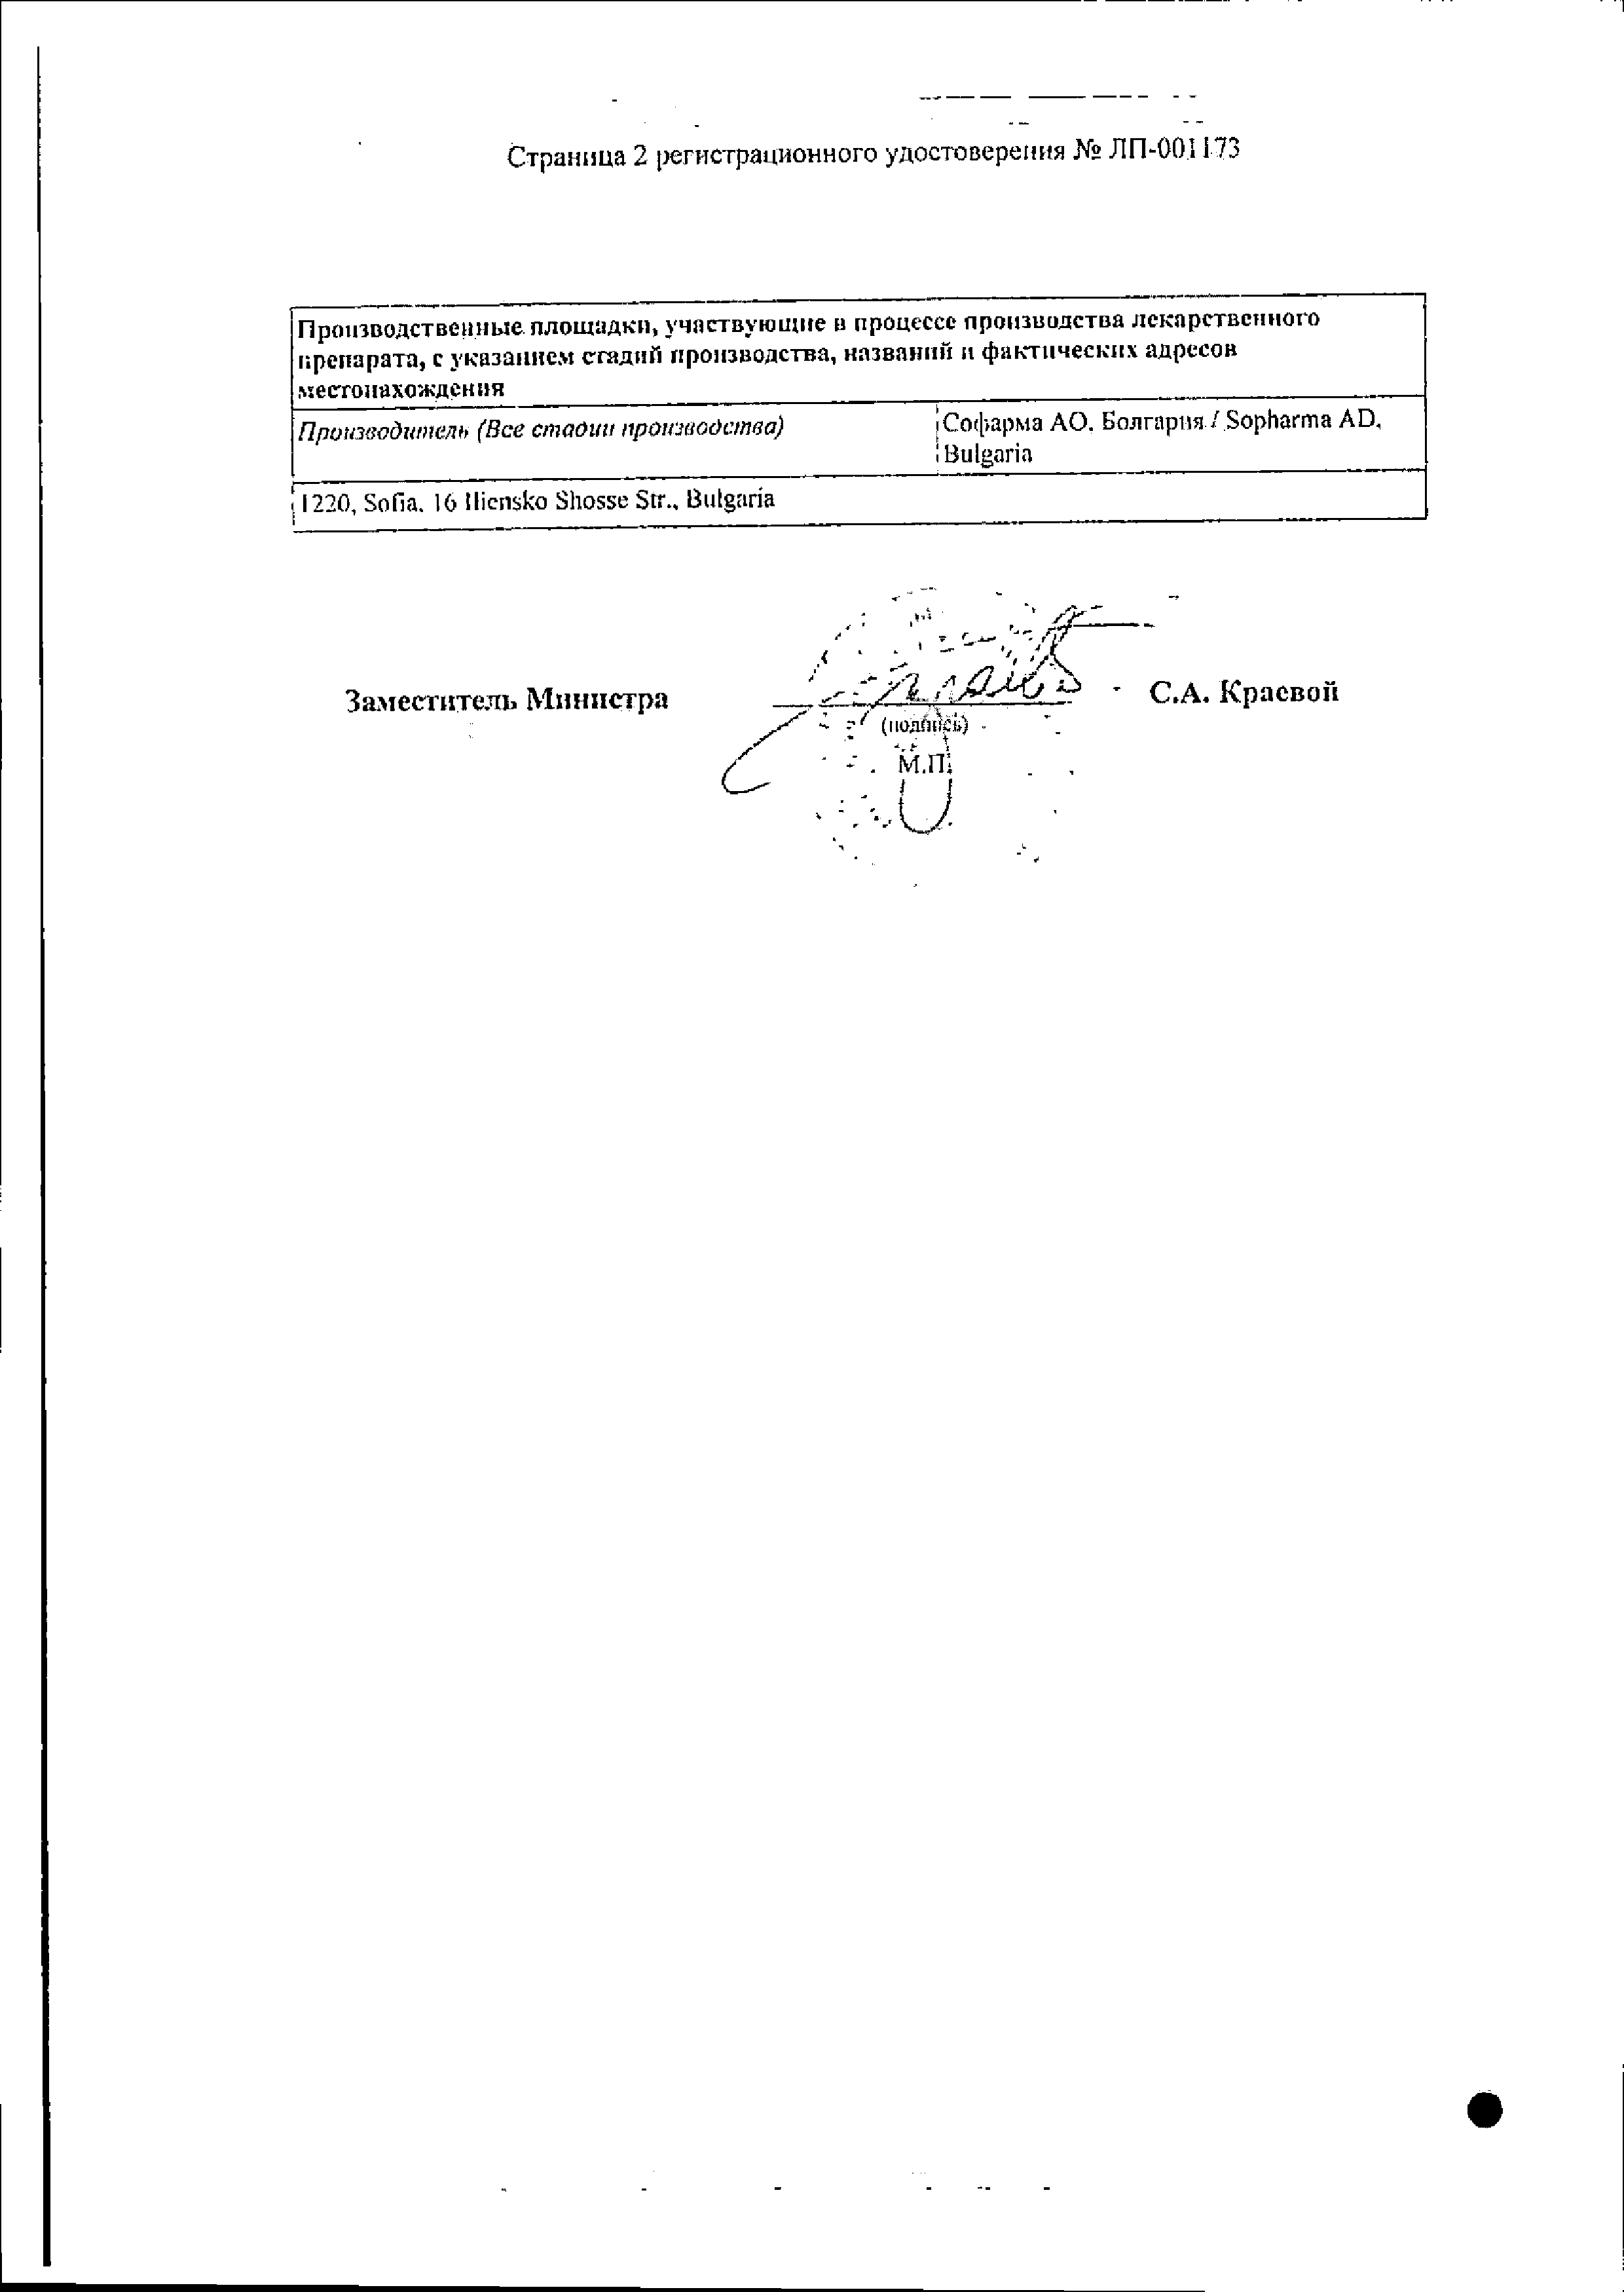 Кленбутерол Софарма сертификат